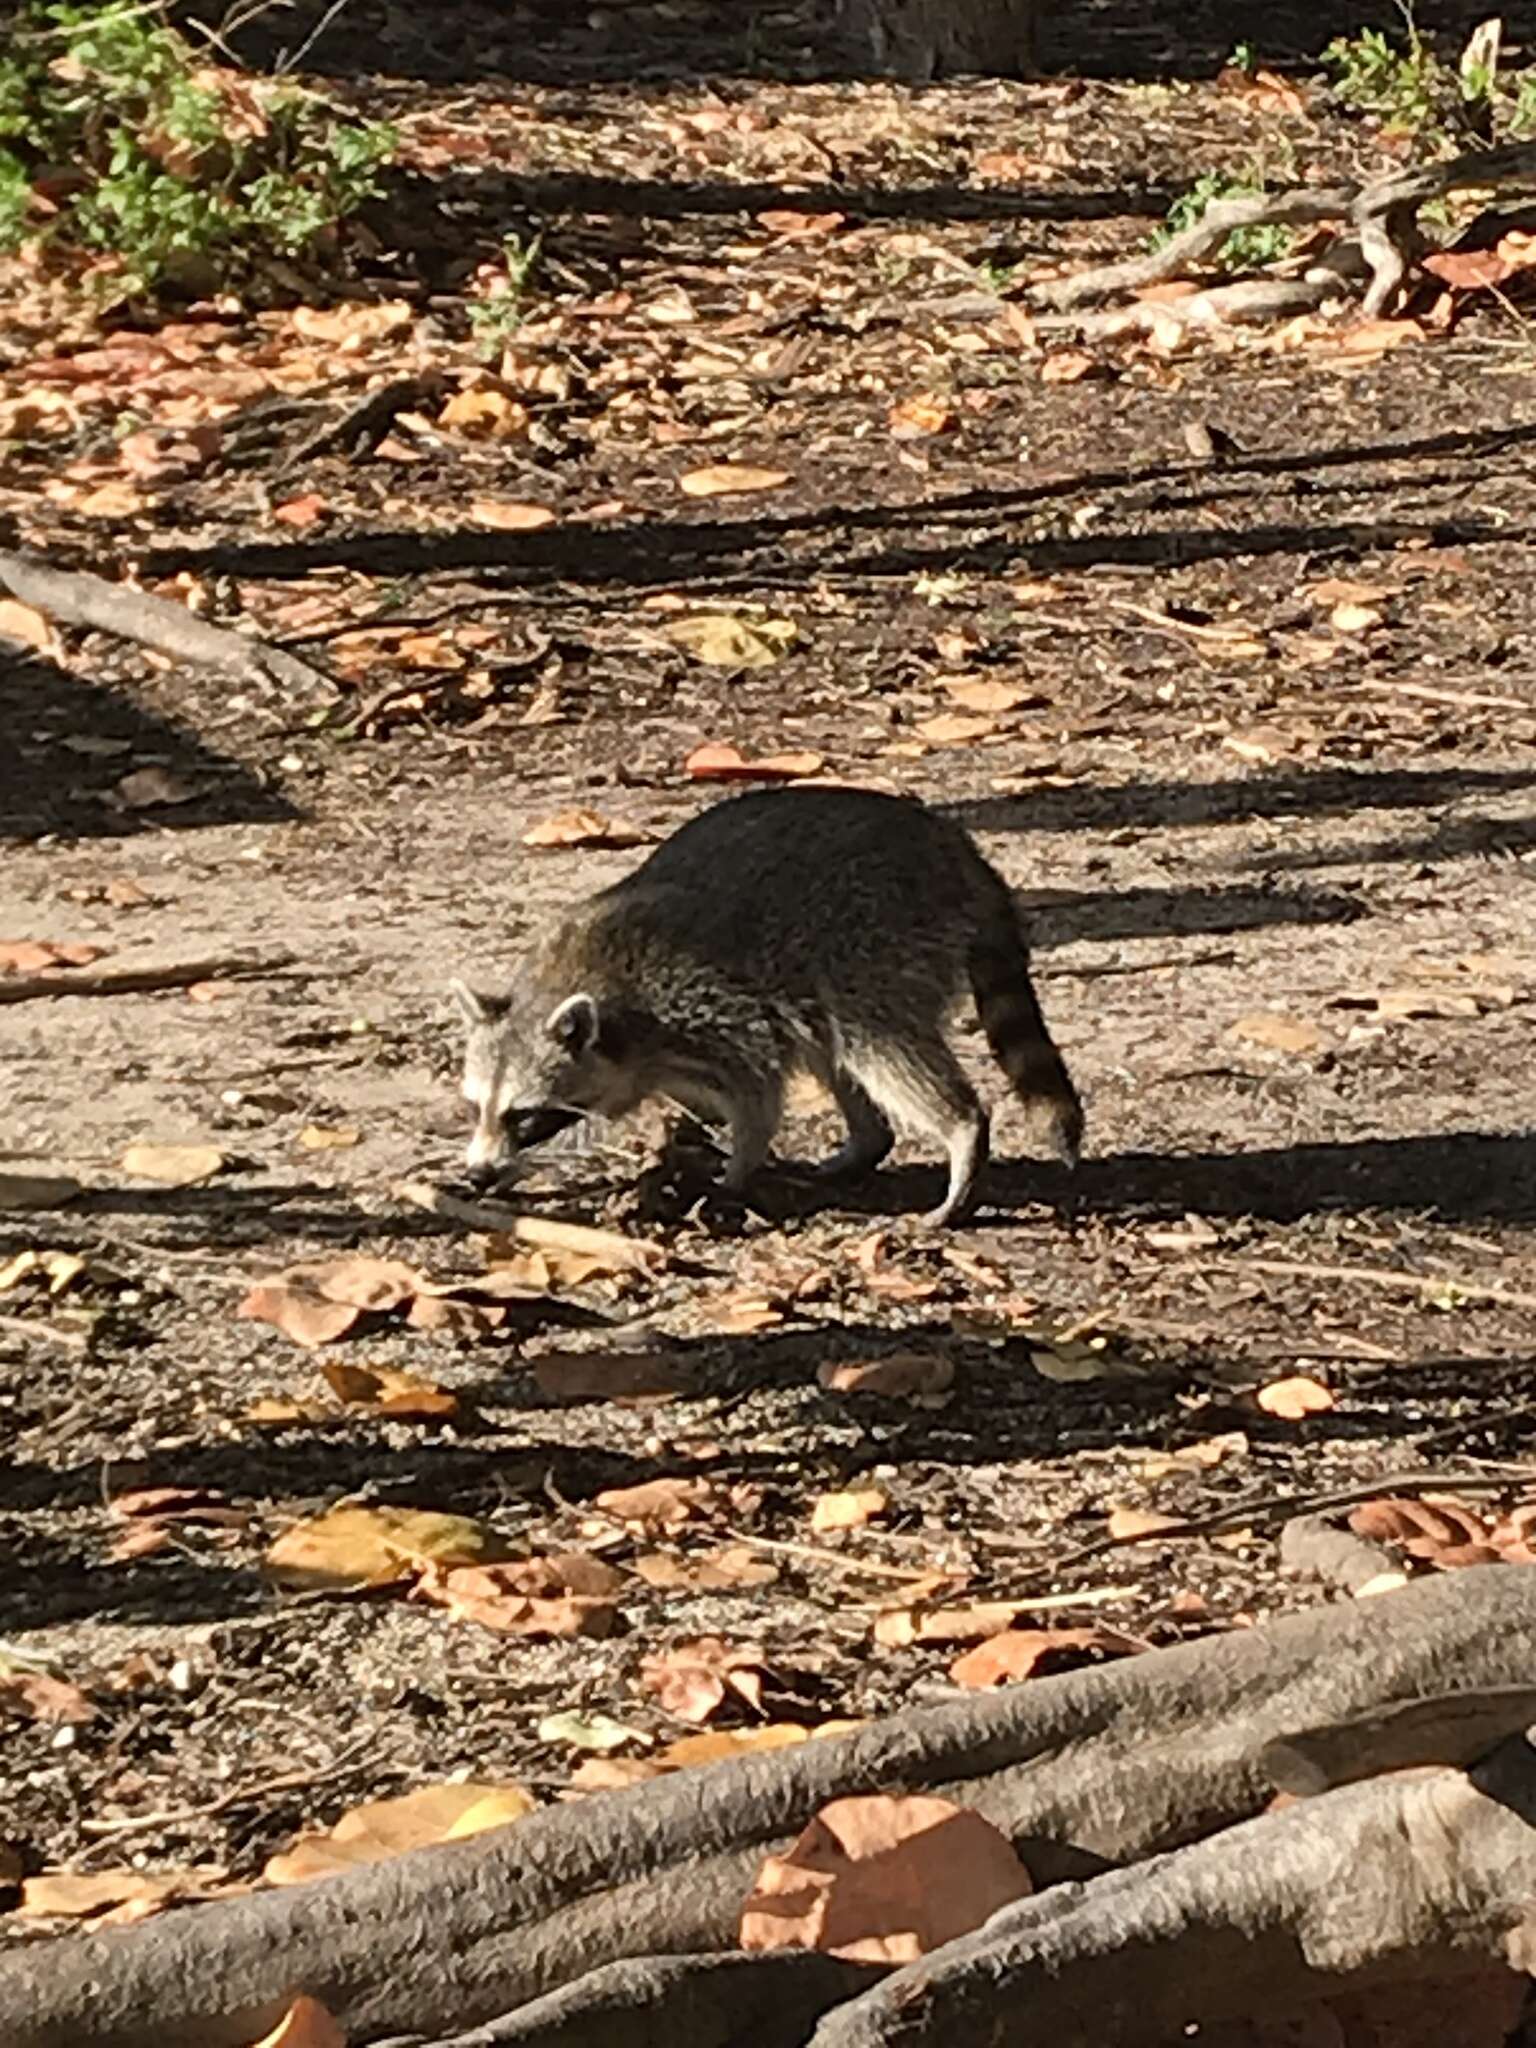 Image of Florida Raccoon